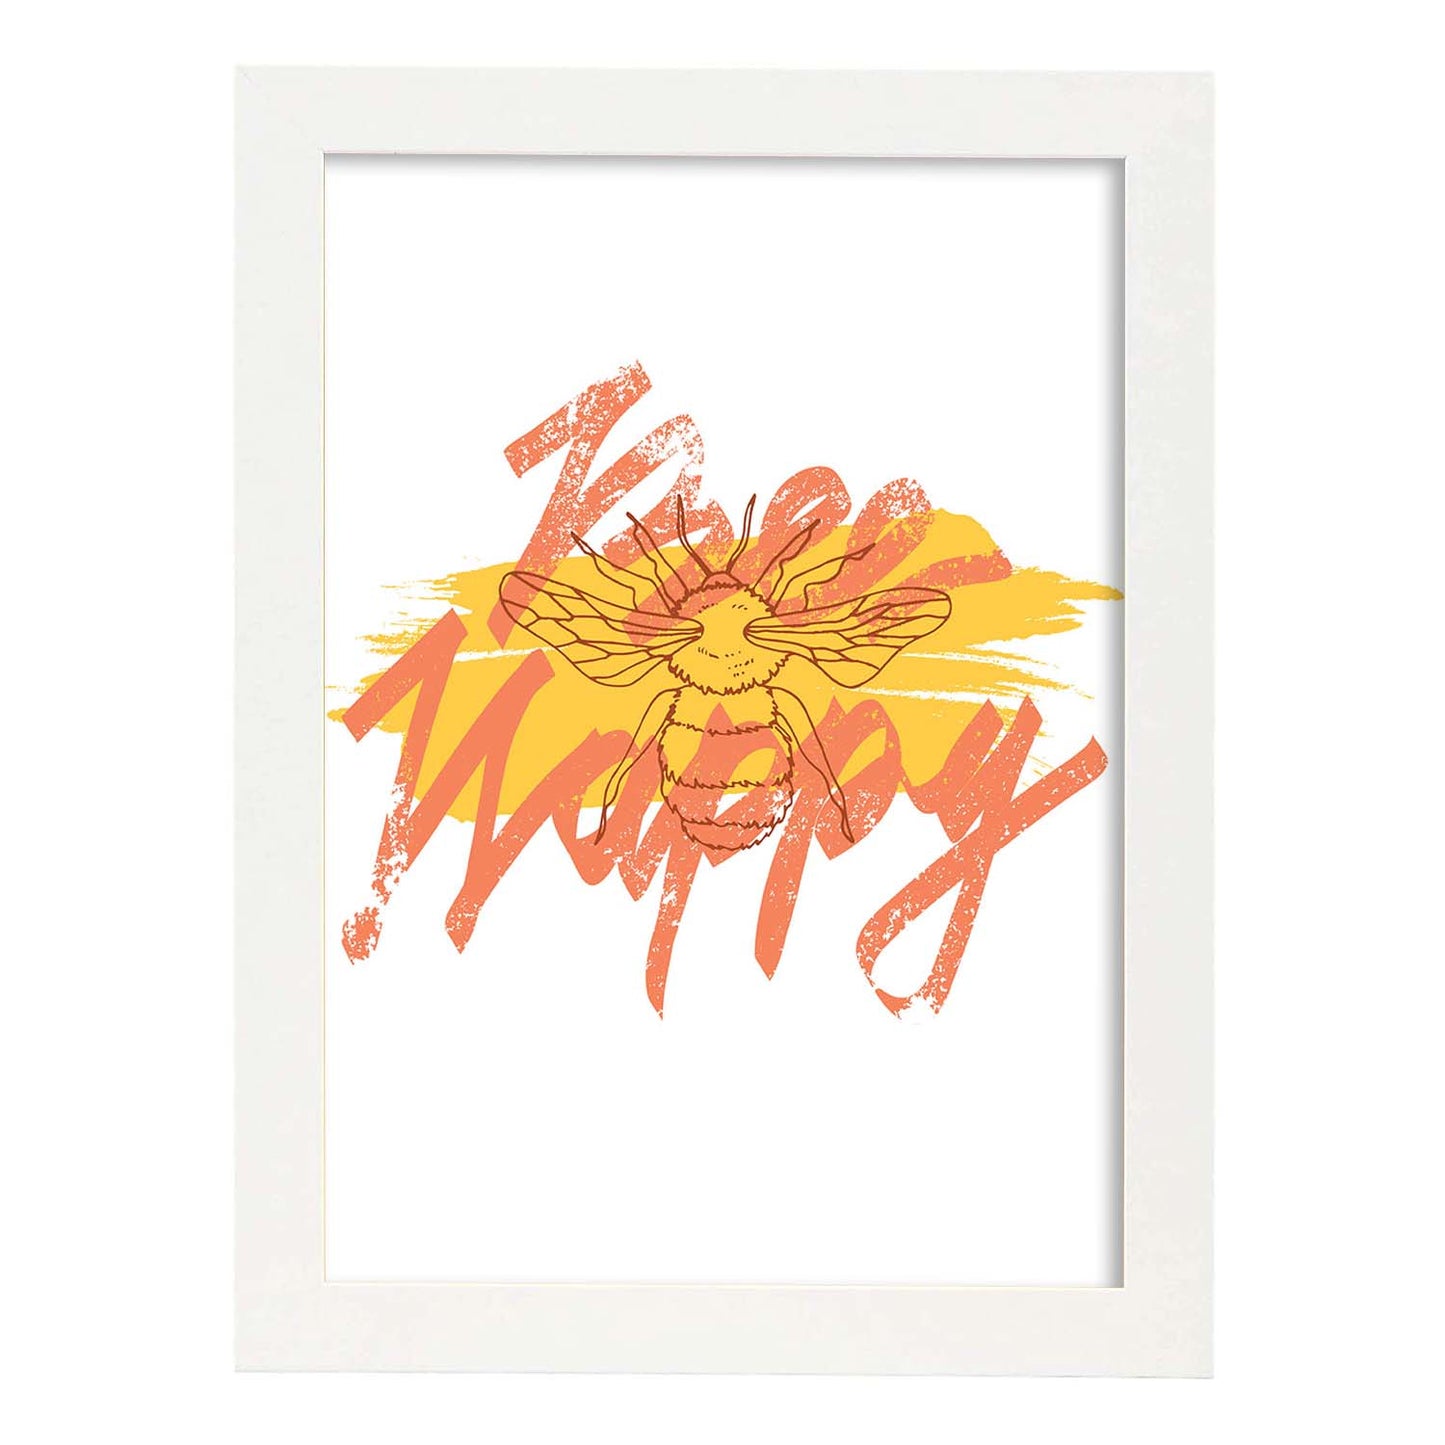 Posters con mensajes felices ilustrados. Lámina de decoración 'Bee Happy' con frases motivadoras y llenas de energia.-Artwork-Nacnic-A3-Marco Blanco-Nacnic Estudio SL